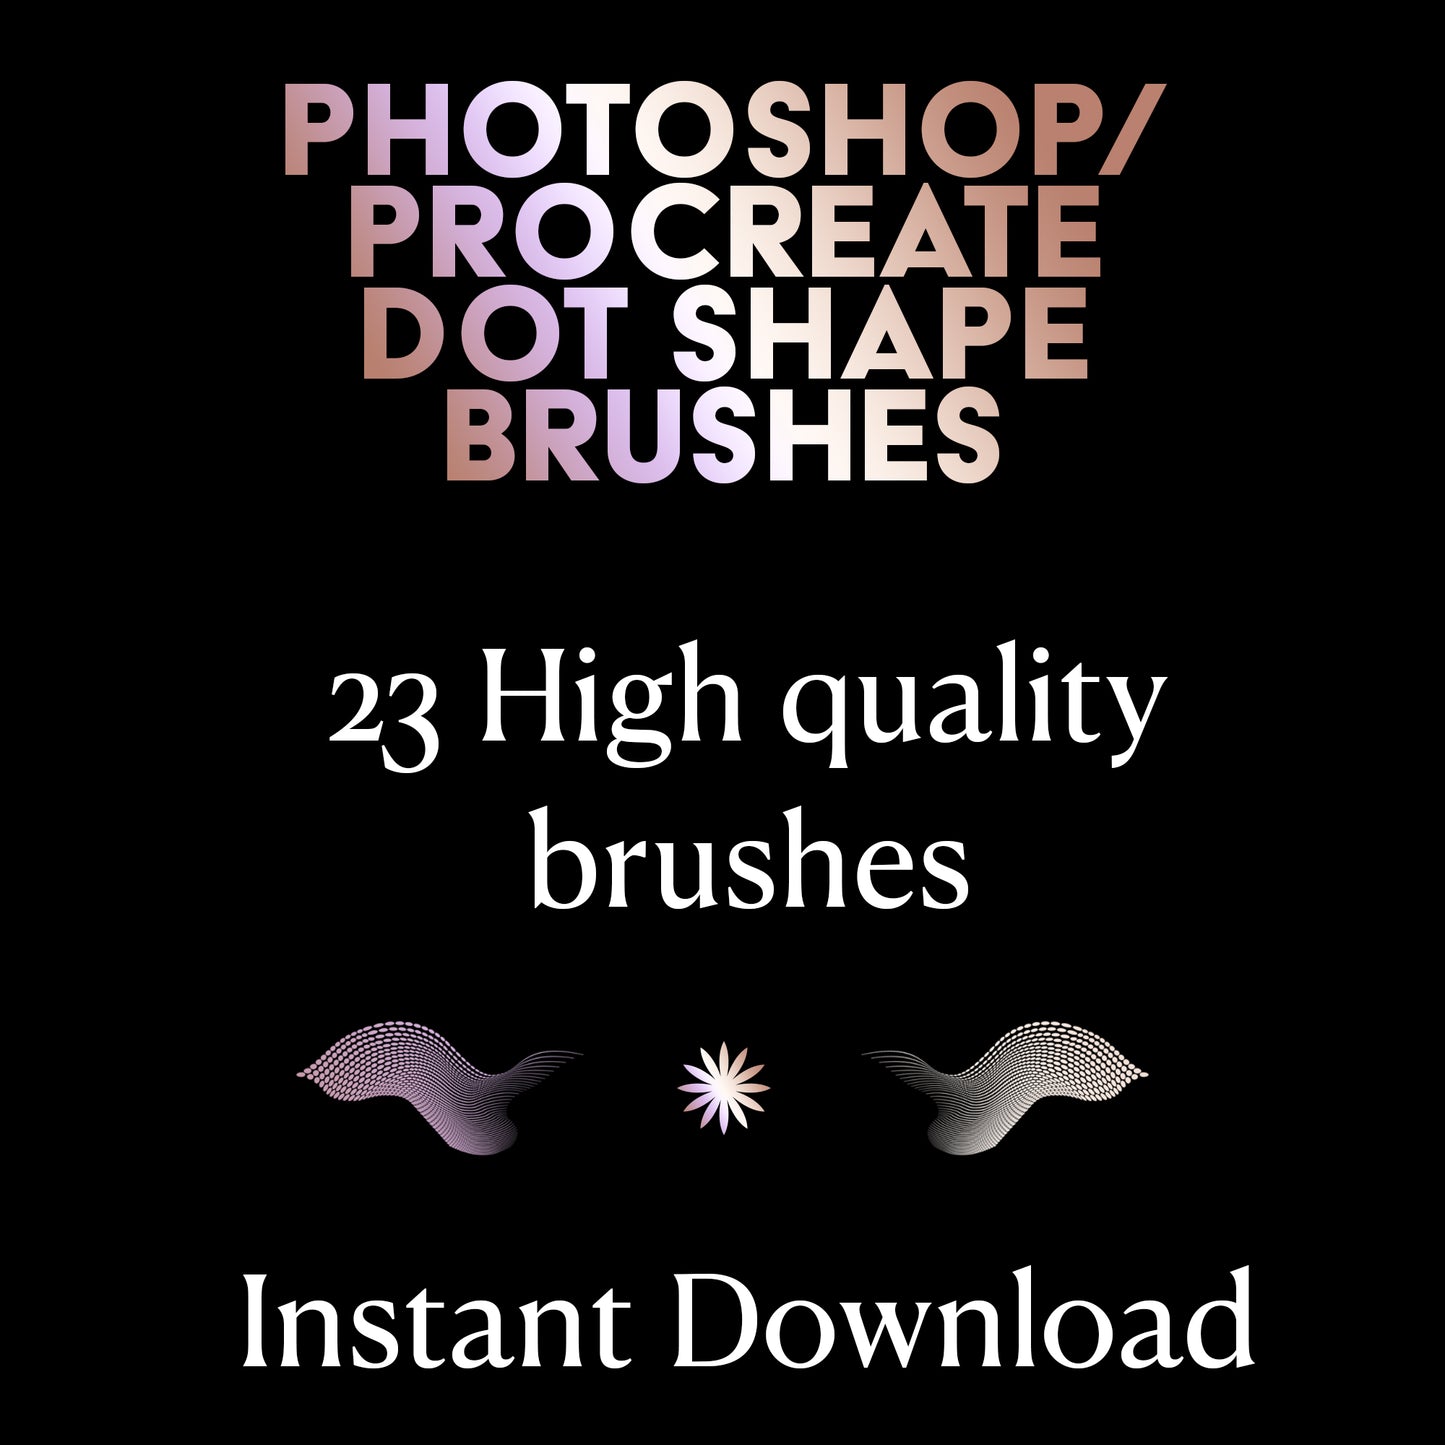 Photoshop / Procreate Dot Shape Brush Pack 1